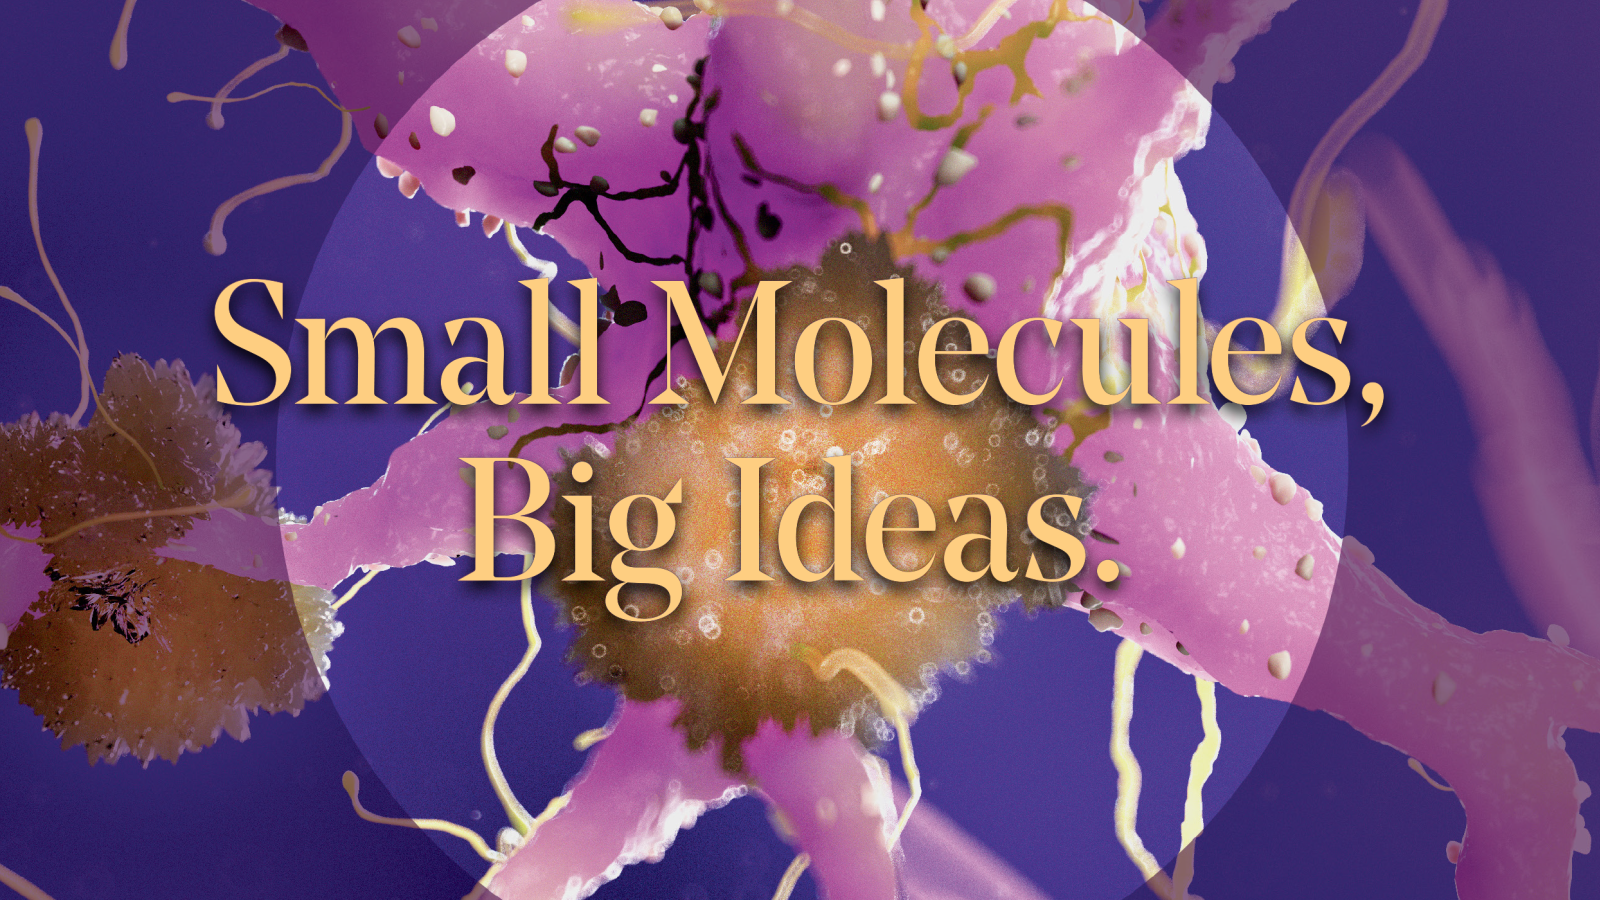 Title Art: Small Molecules, Big Ideas